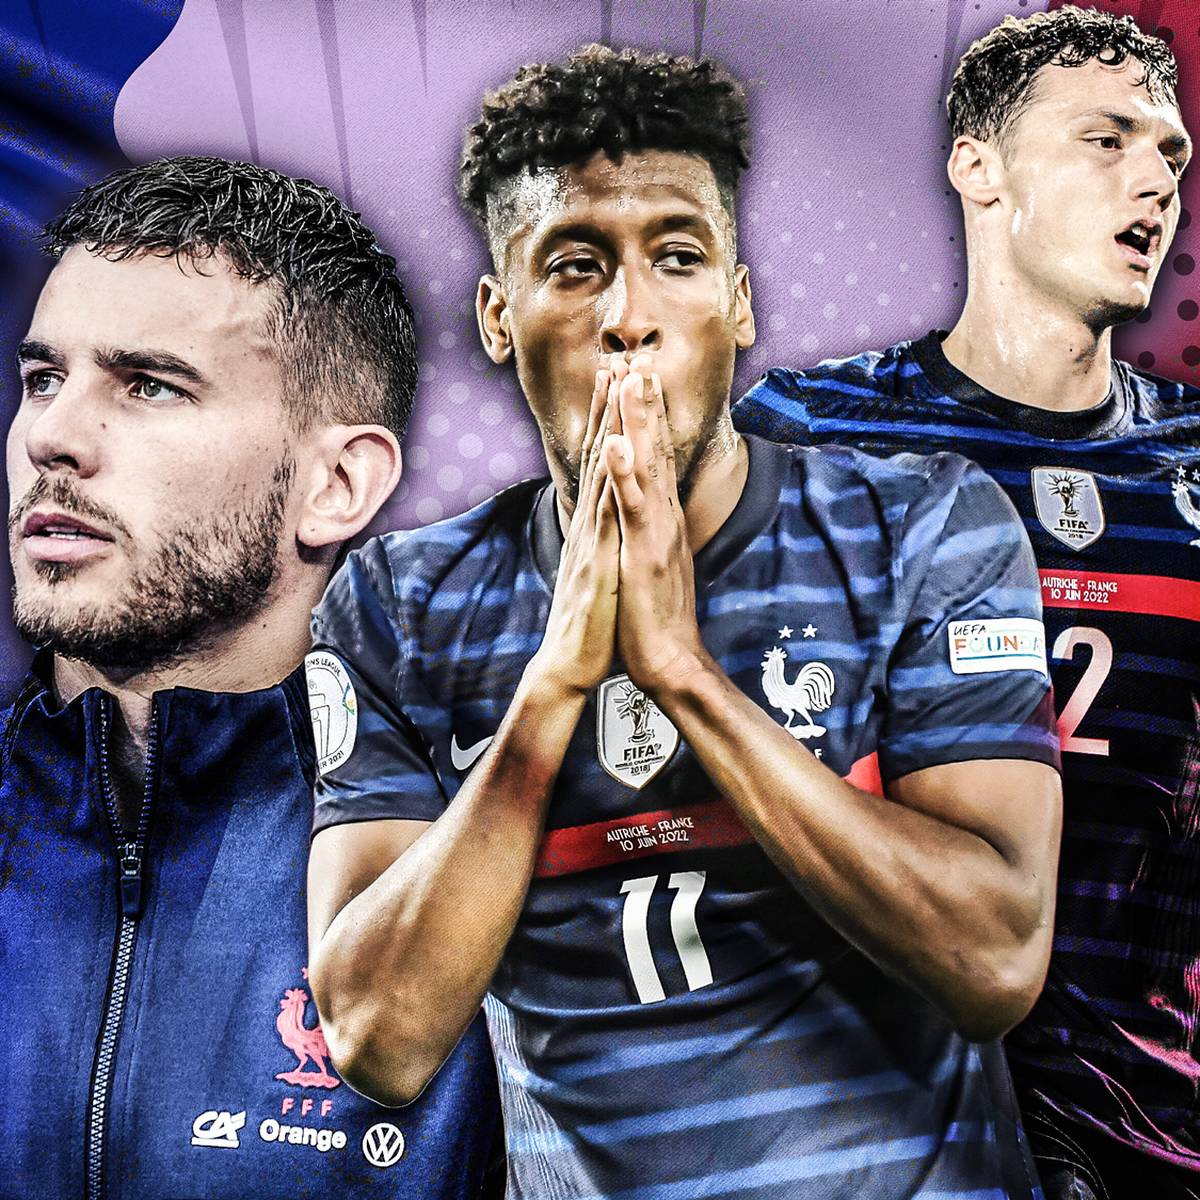 Die französische Nationalmannschaft steckt in einer Krise. Mittendrin sind mit Benjamin Pavard, Lucas Hernández und Kingsley Coman drei Akteure des FC Bayern, die alle aktuell nicht überzeugen.